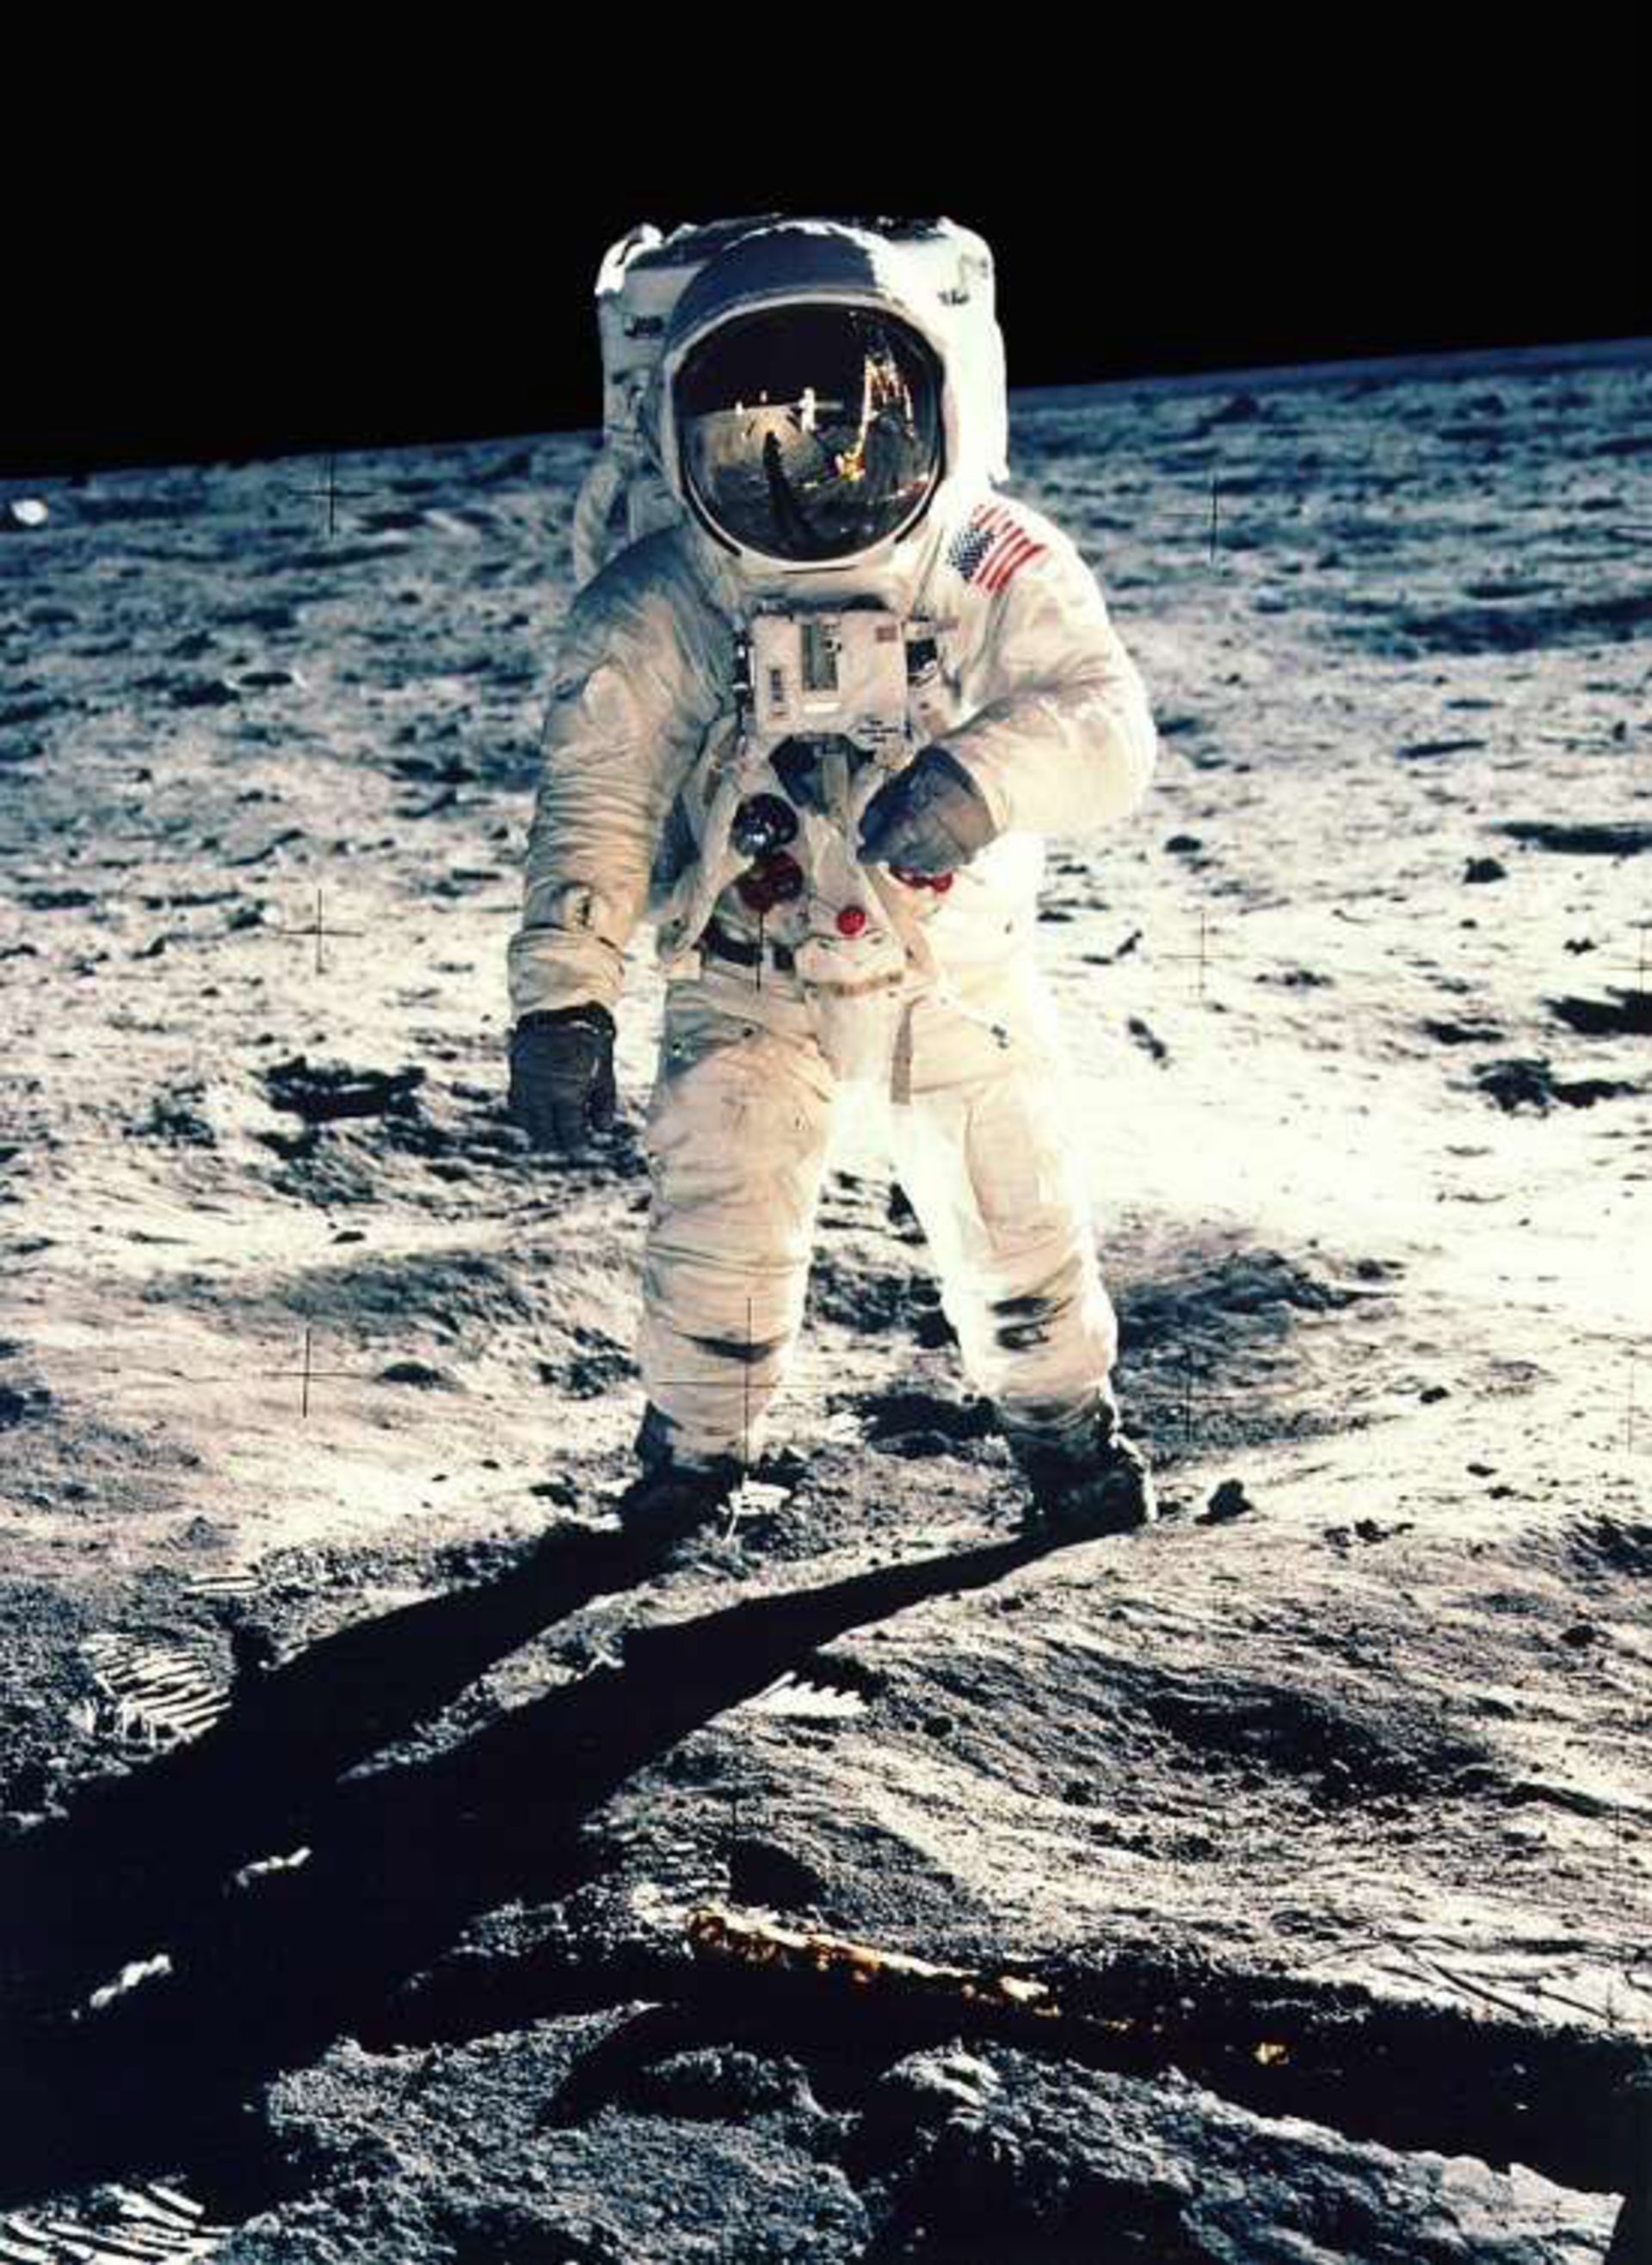 مرجع متخصصين ايران عكس گرفته شده از فضانورد Buzz Aldrin با تجهيزات مخصوص فضانوردي‌اش